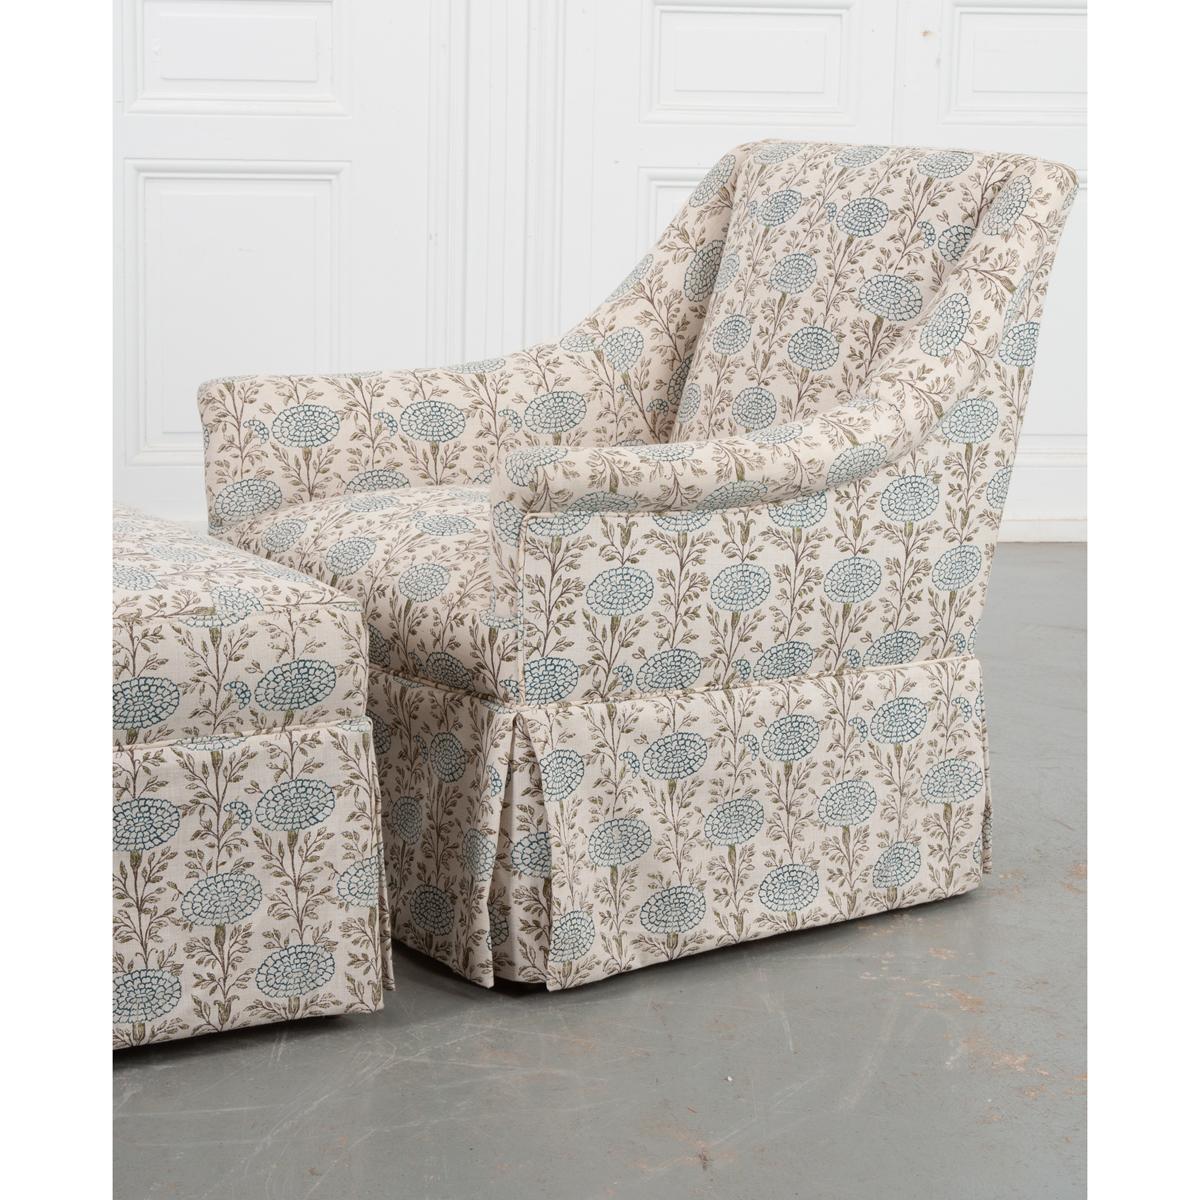 Un charmant duo de fauteuil et d'ottomans en tissu Lisa Fine assorti. Fabriqué sur mesure par Cisco, ce petit ensemble offre un endroit confortable et élégant pour se détendre sans prendre trop d'espace. Le motif répétitif de fleurs bleues et la